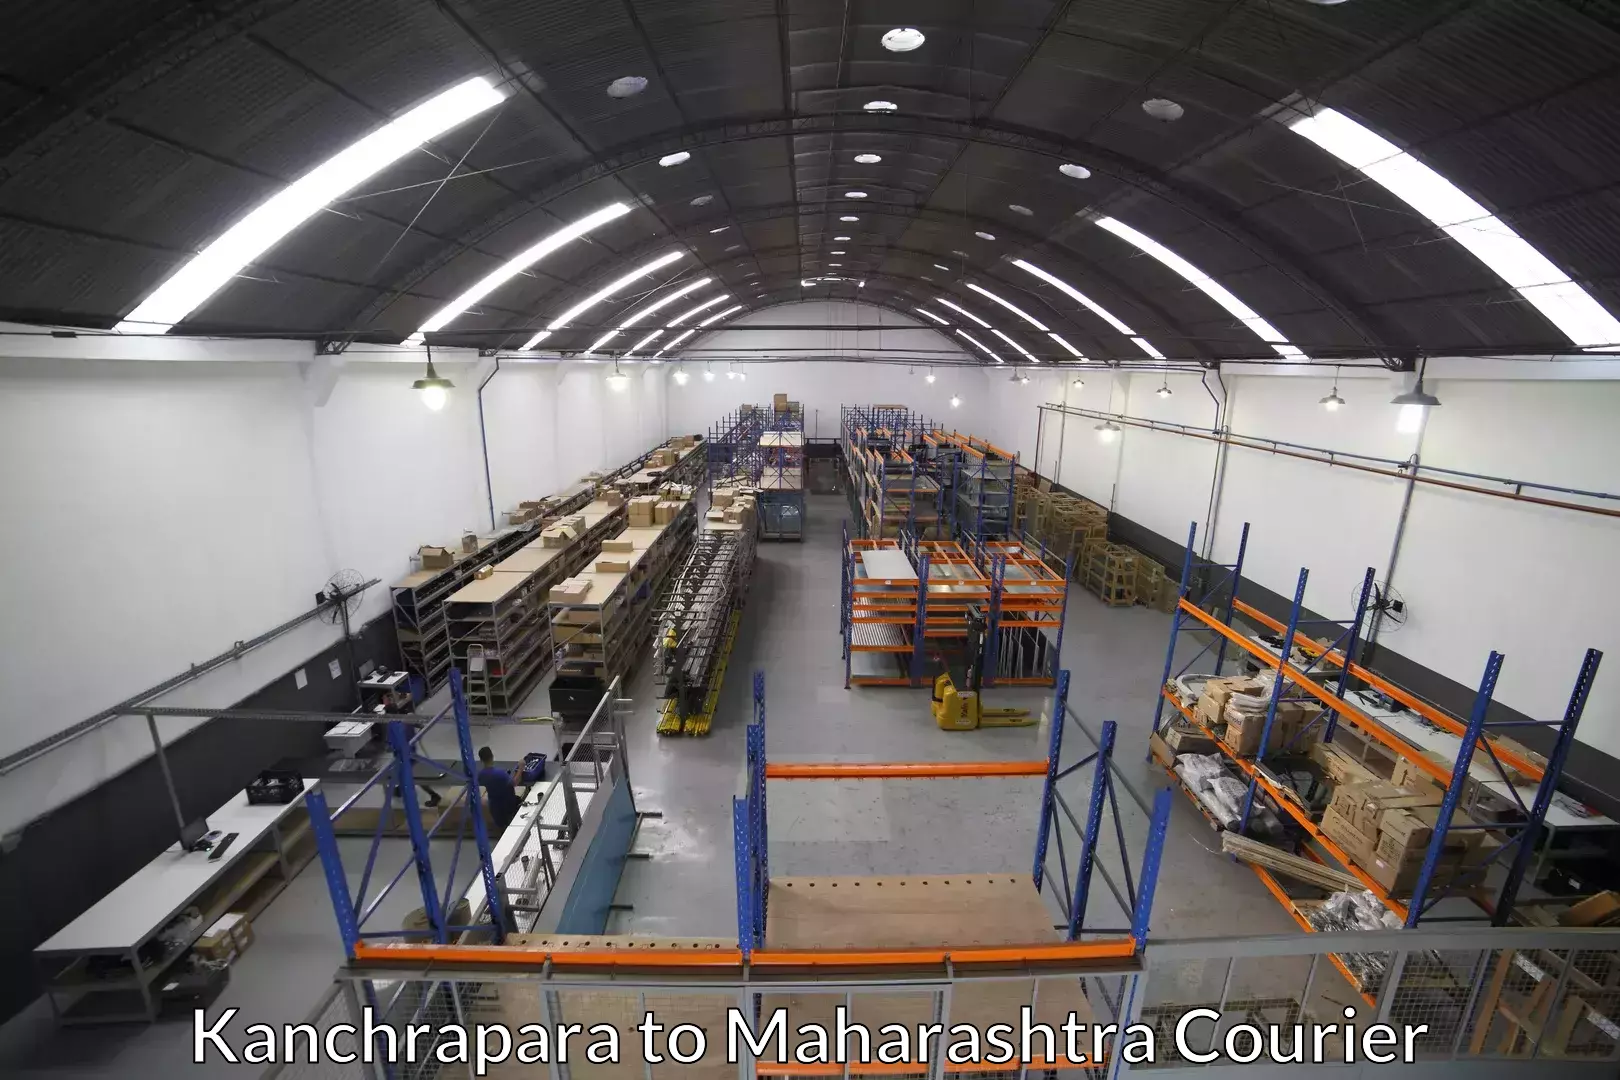 Furniture moving service in Kanchrapara to Aurangabad